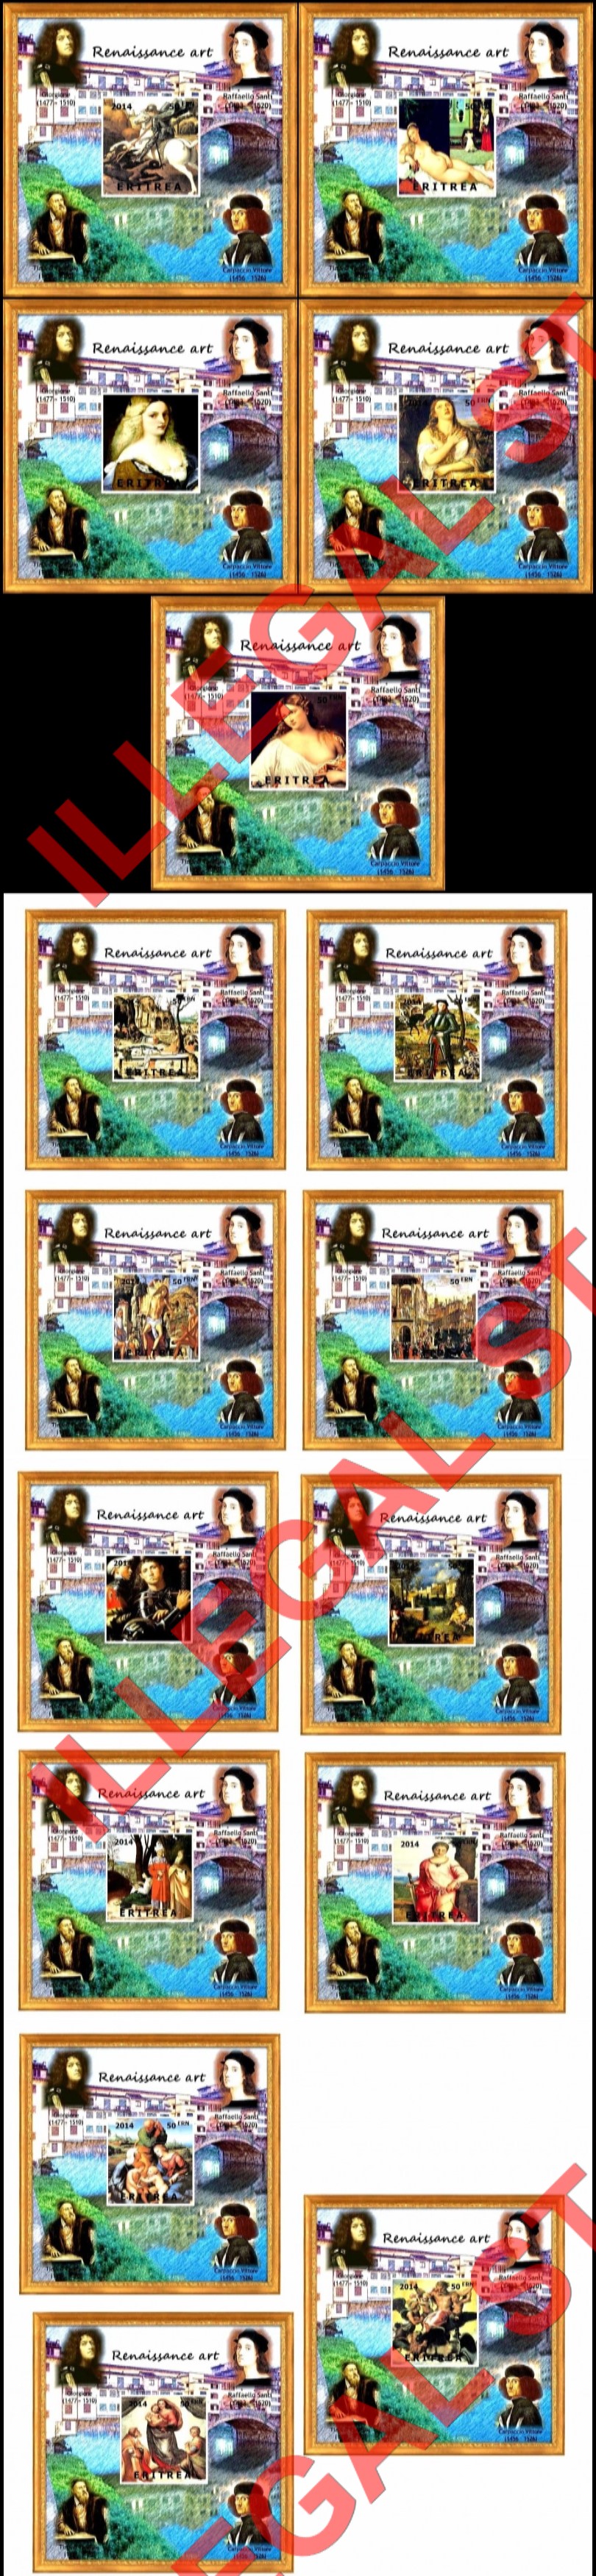 Eritrea 2014 Paintings Renaissance Art Counterfeit Illegal Stamp Souvenir Sheets of 1